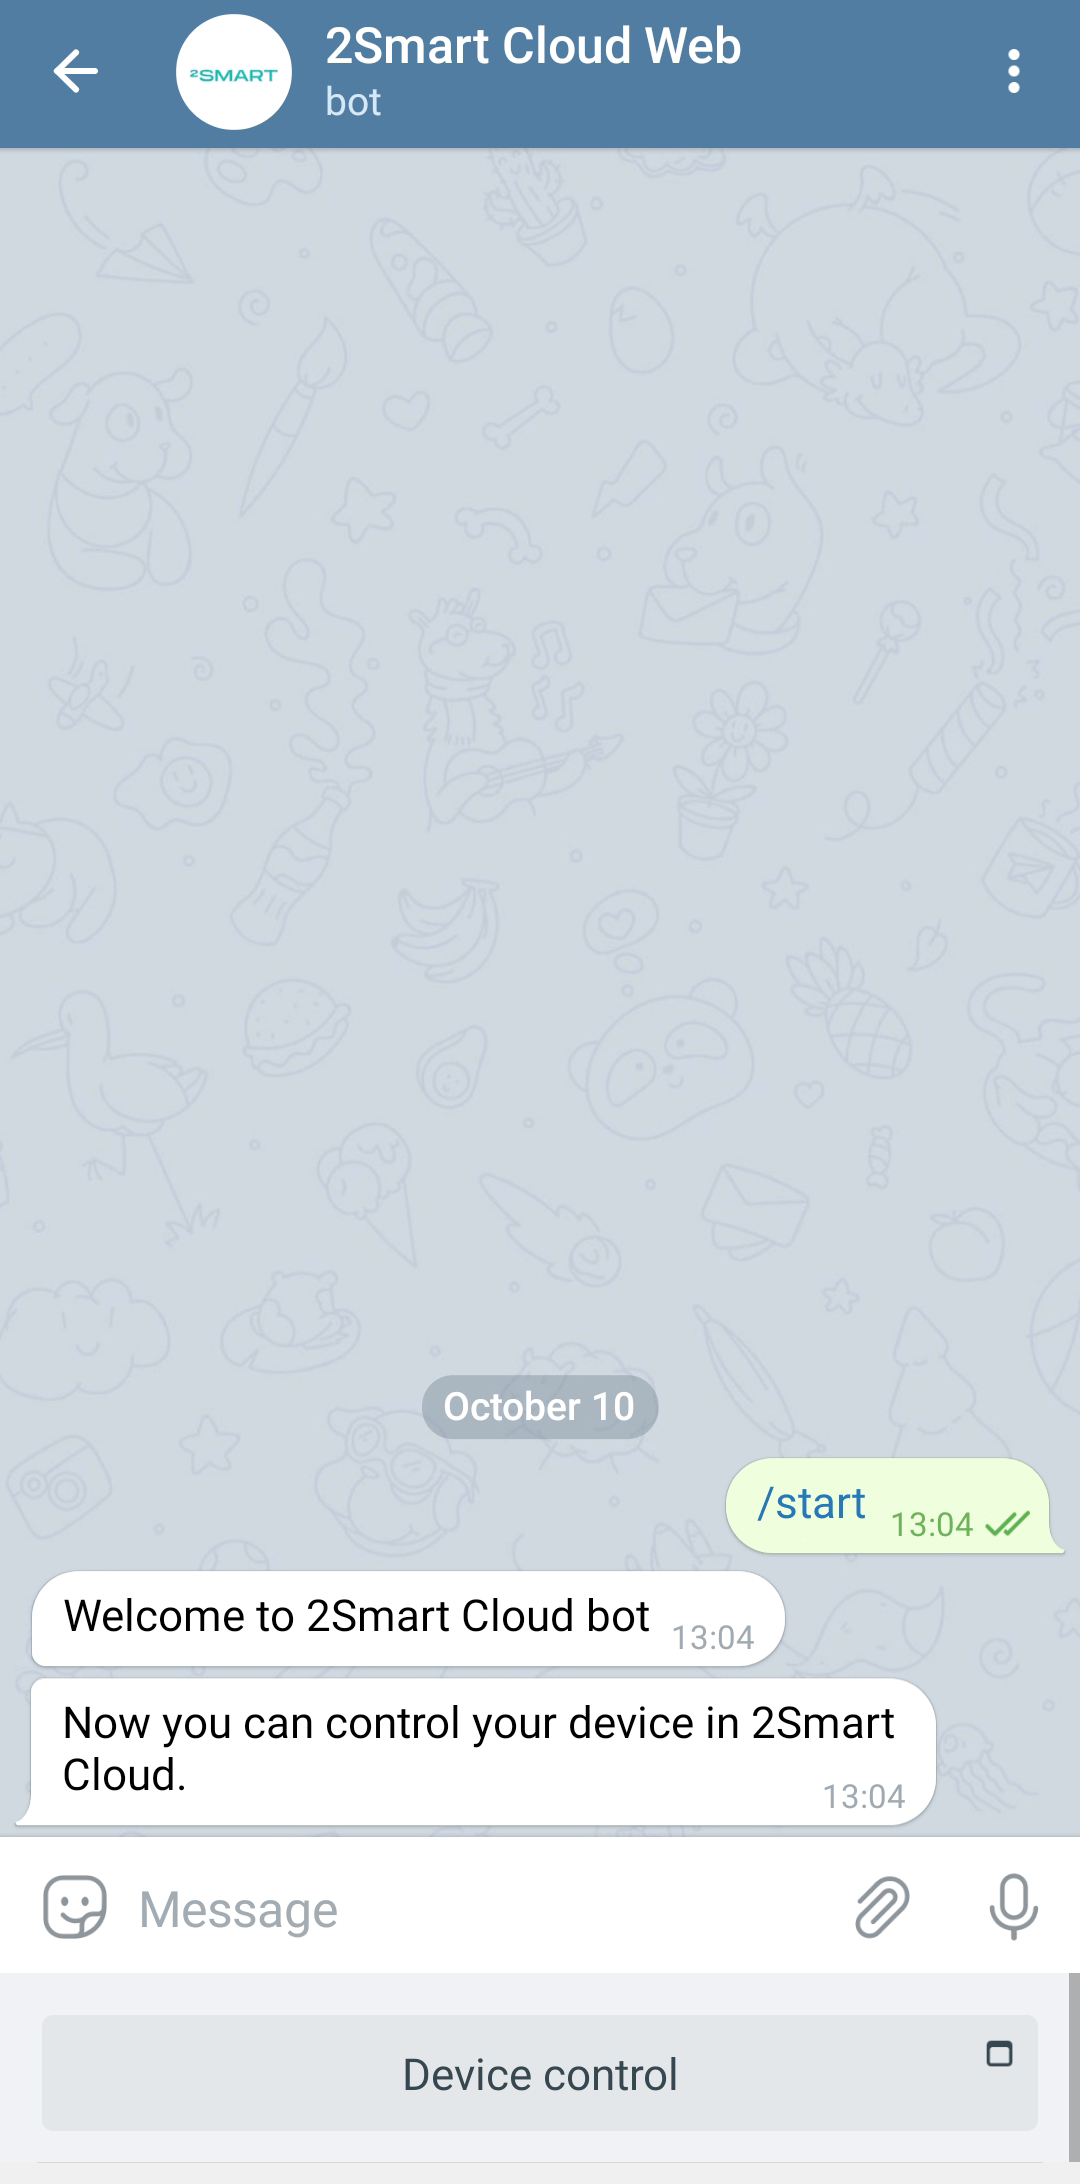 Telegram bot 2Smart Cloud with a web interface